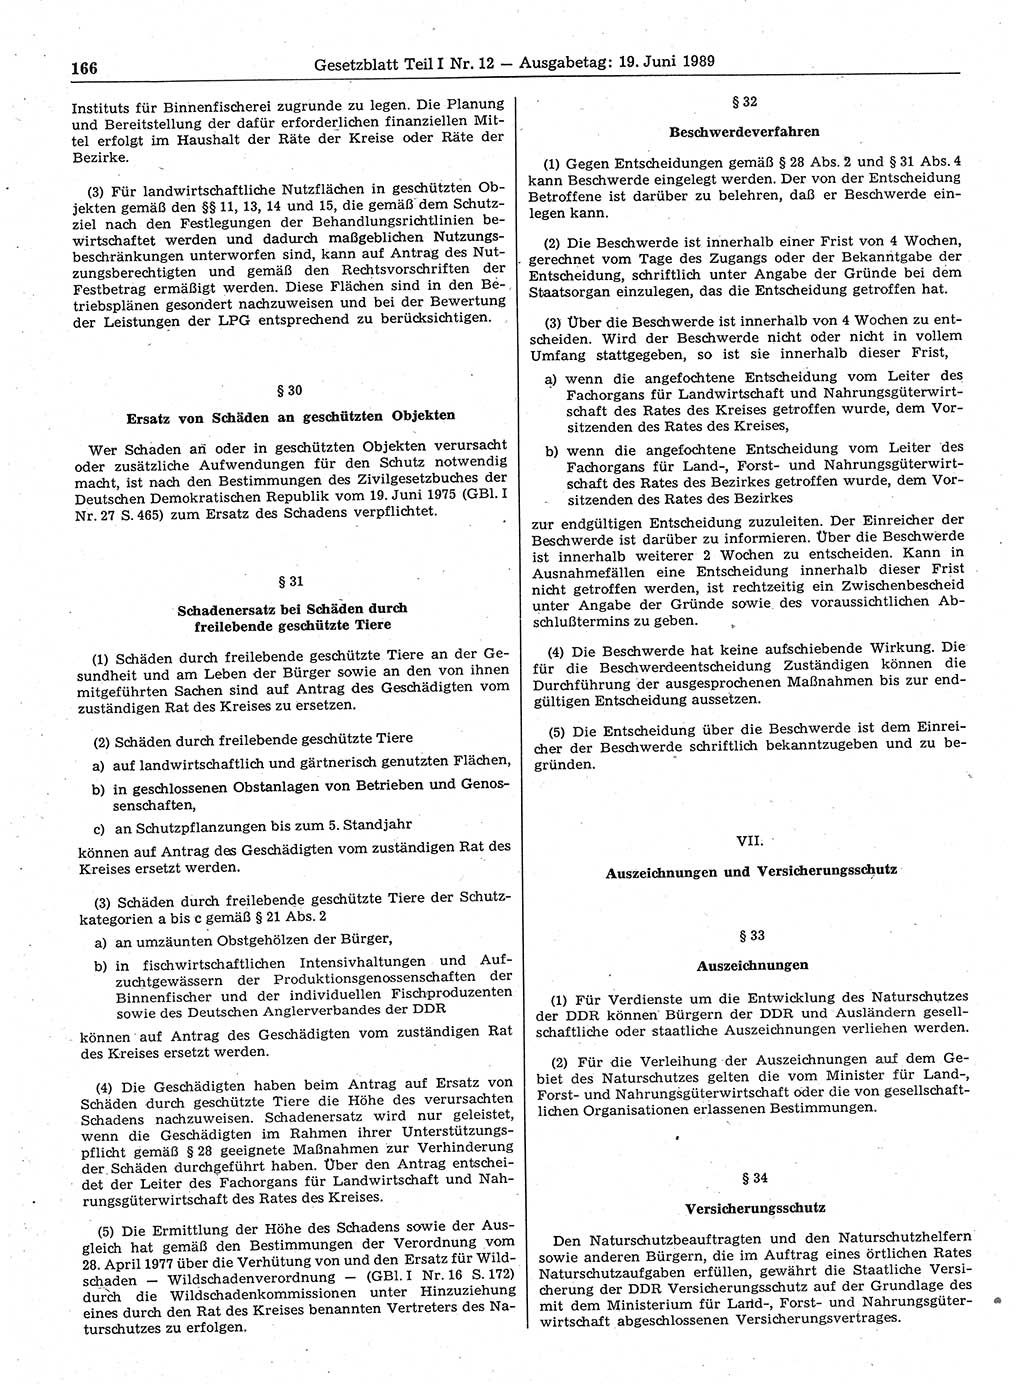 Gesetzblatt (GBl.) der Deutschen Demokratischen Republik (DDR) Teil Ⅰ 1989, Seite 166 (GBl. DDR Ⅰ 1989, S. 166)